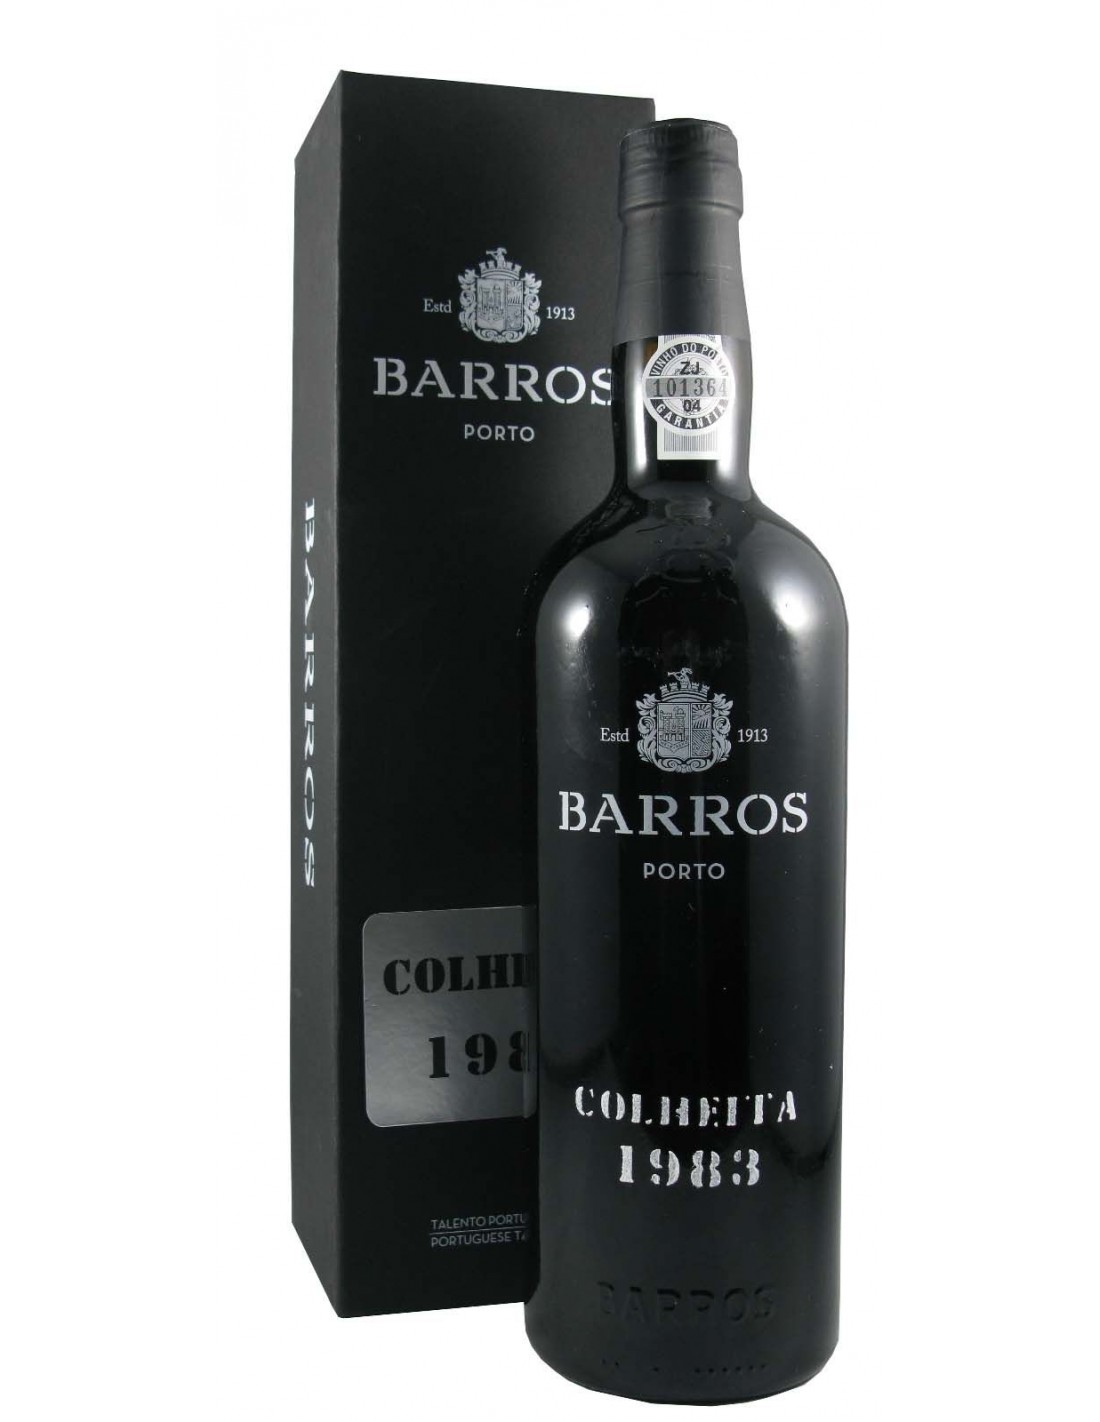 Vin porto rosu dulce, Barros Colheita, 1983, 0.75L, 20% alc., Portugalia alcooldiscount.ro